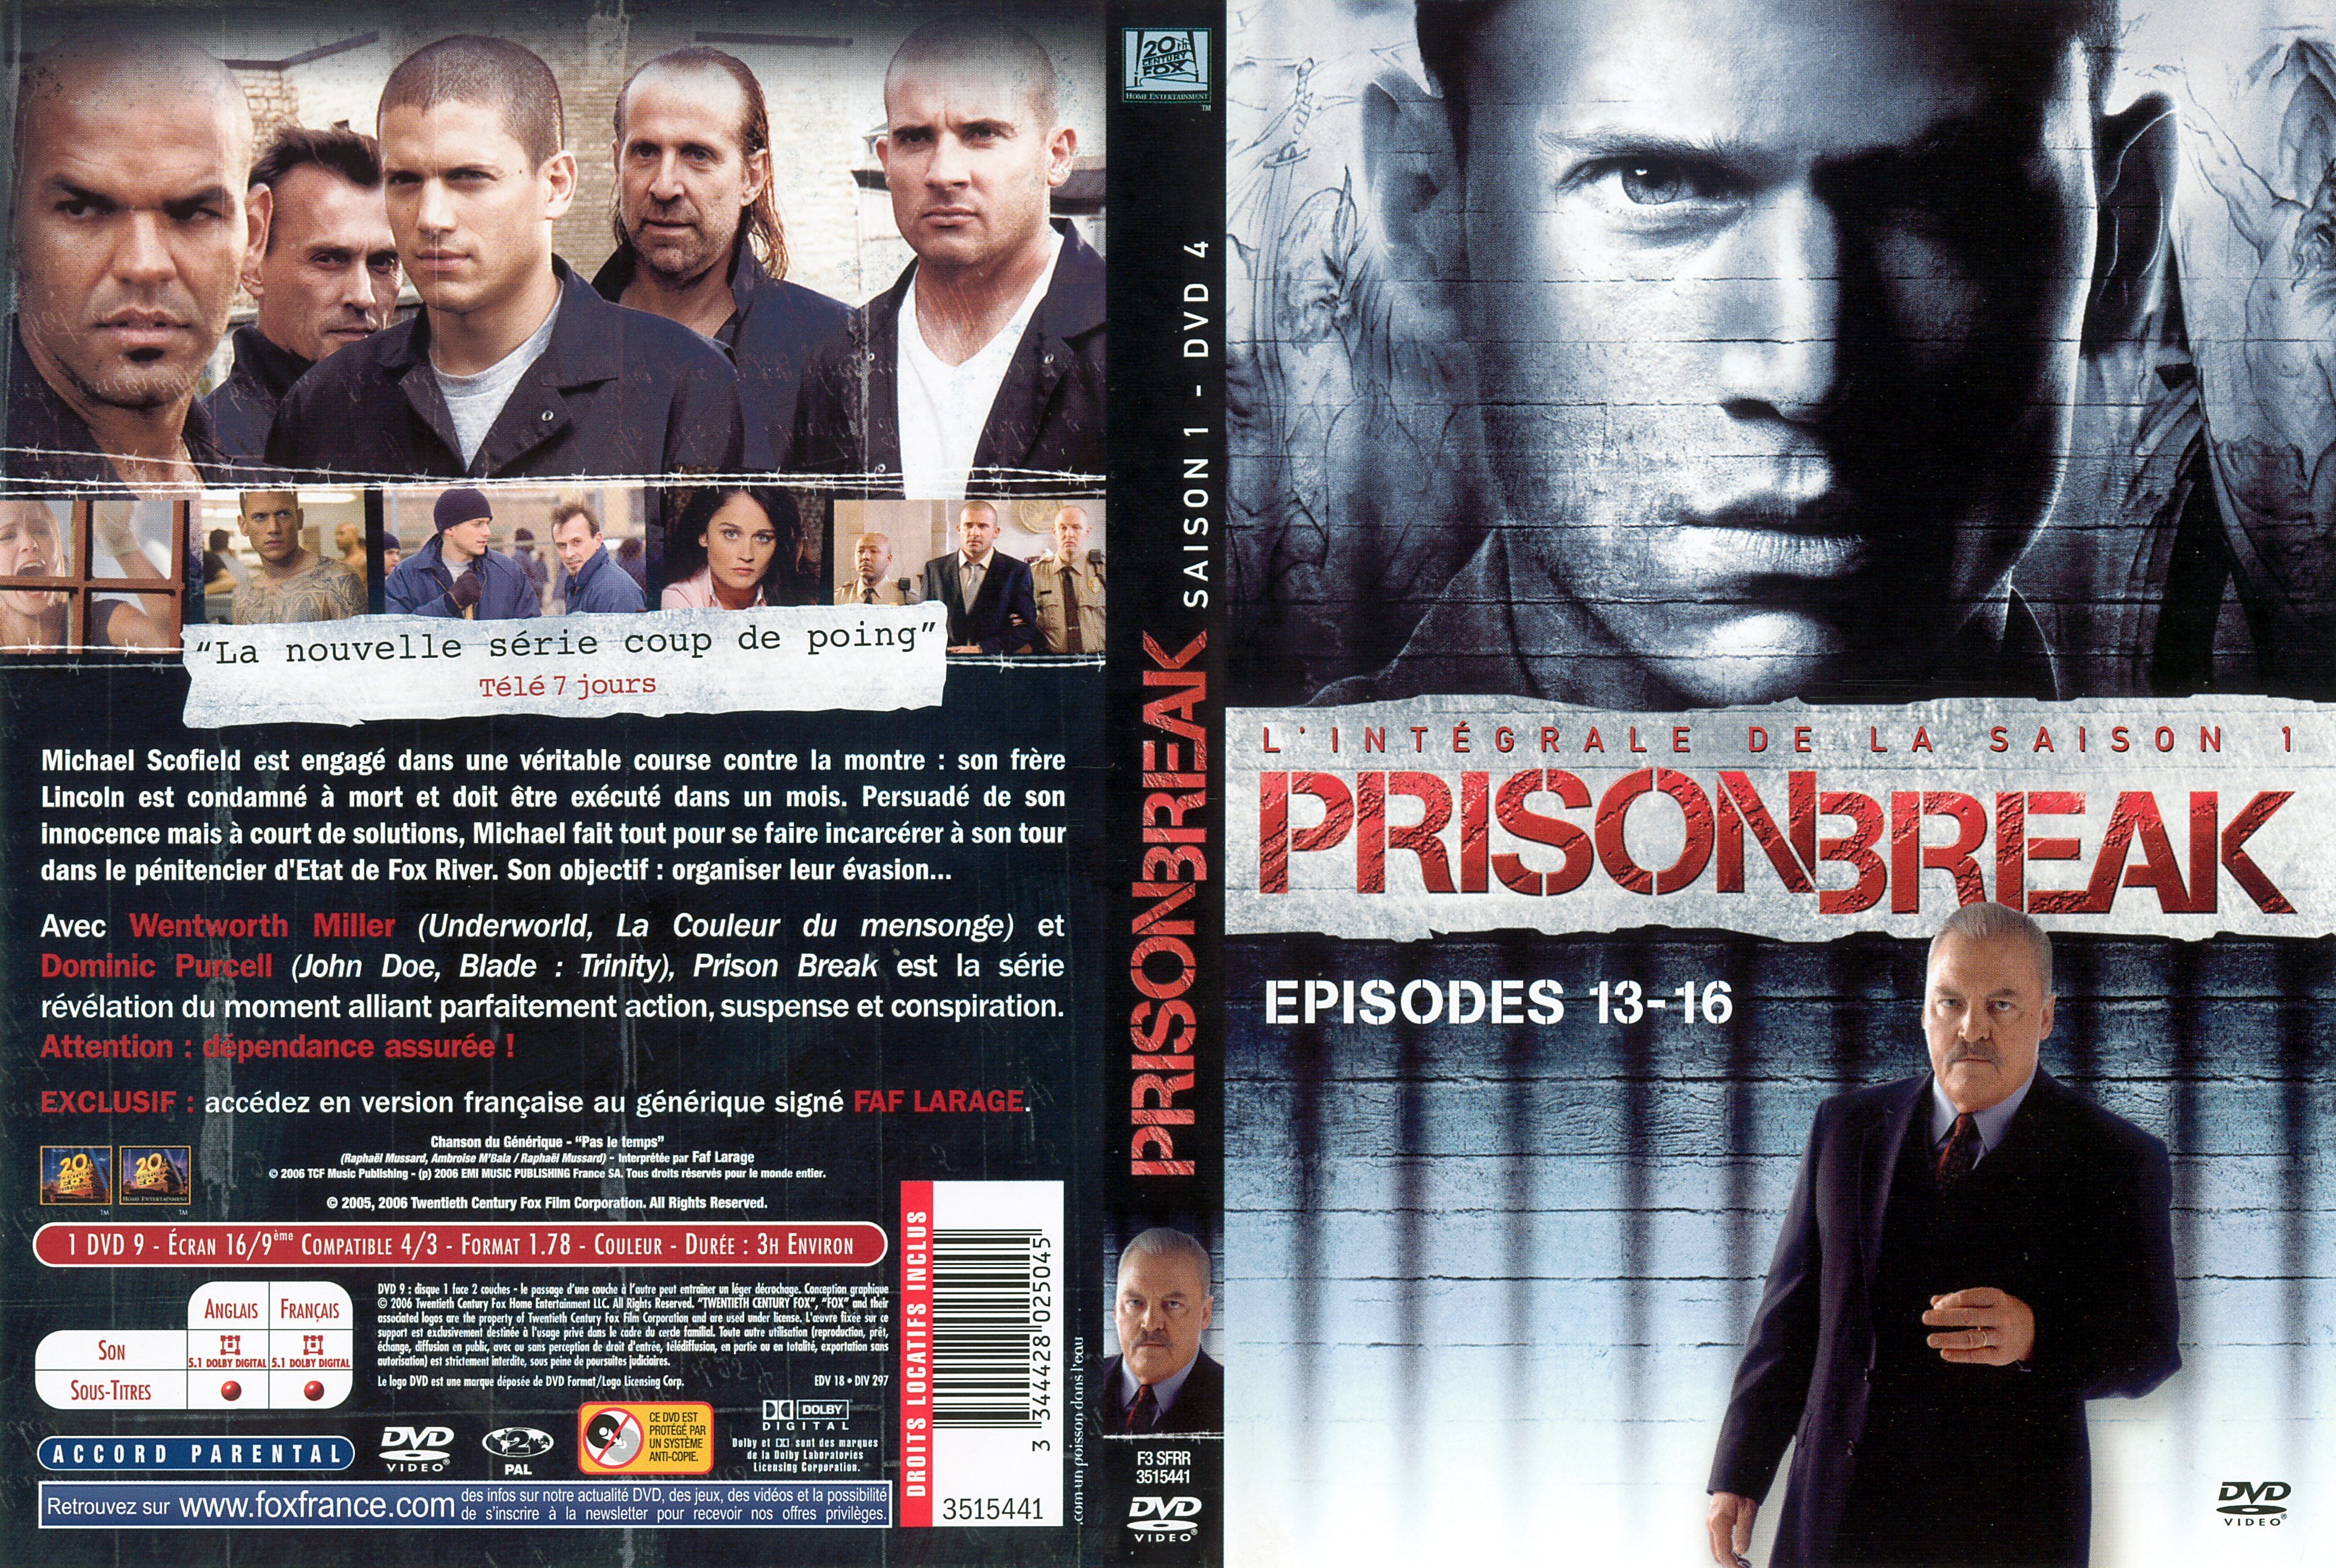 Jaquette DVD Prison break saison 1 dvd 4